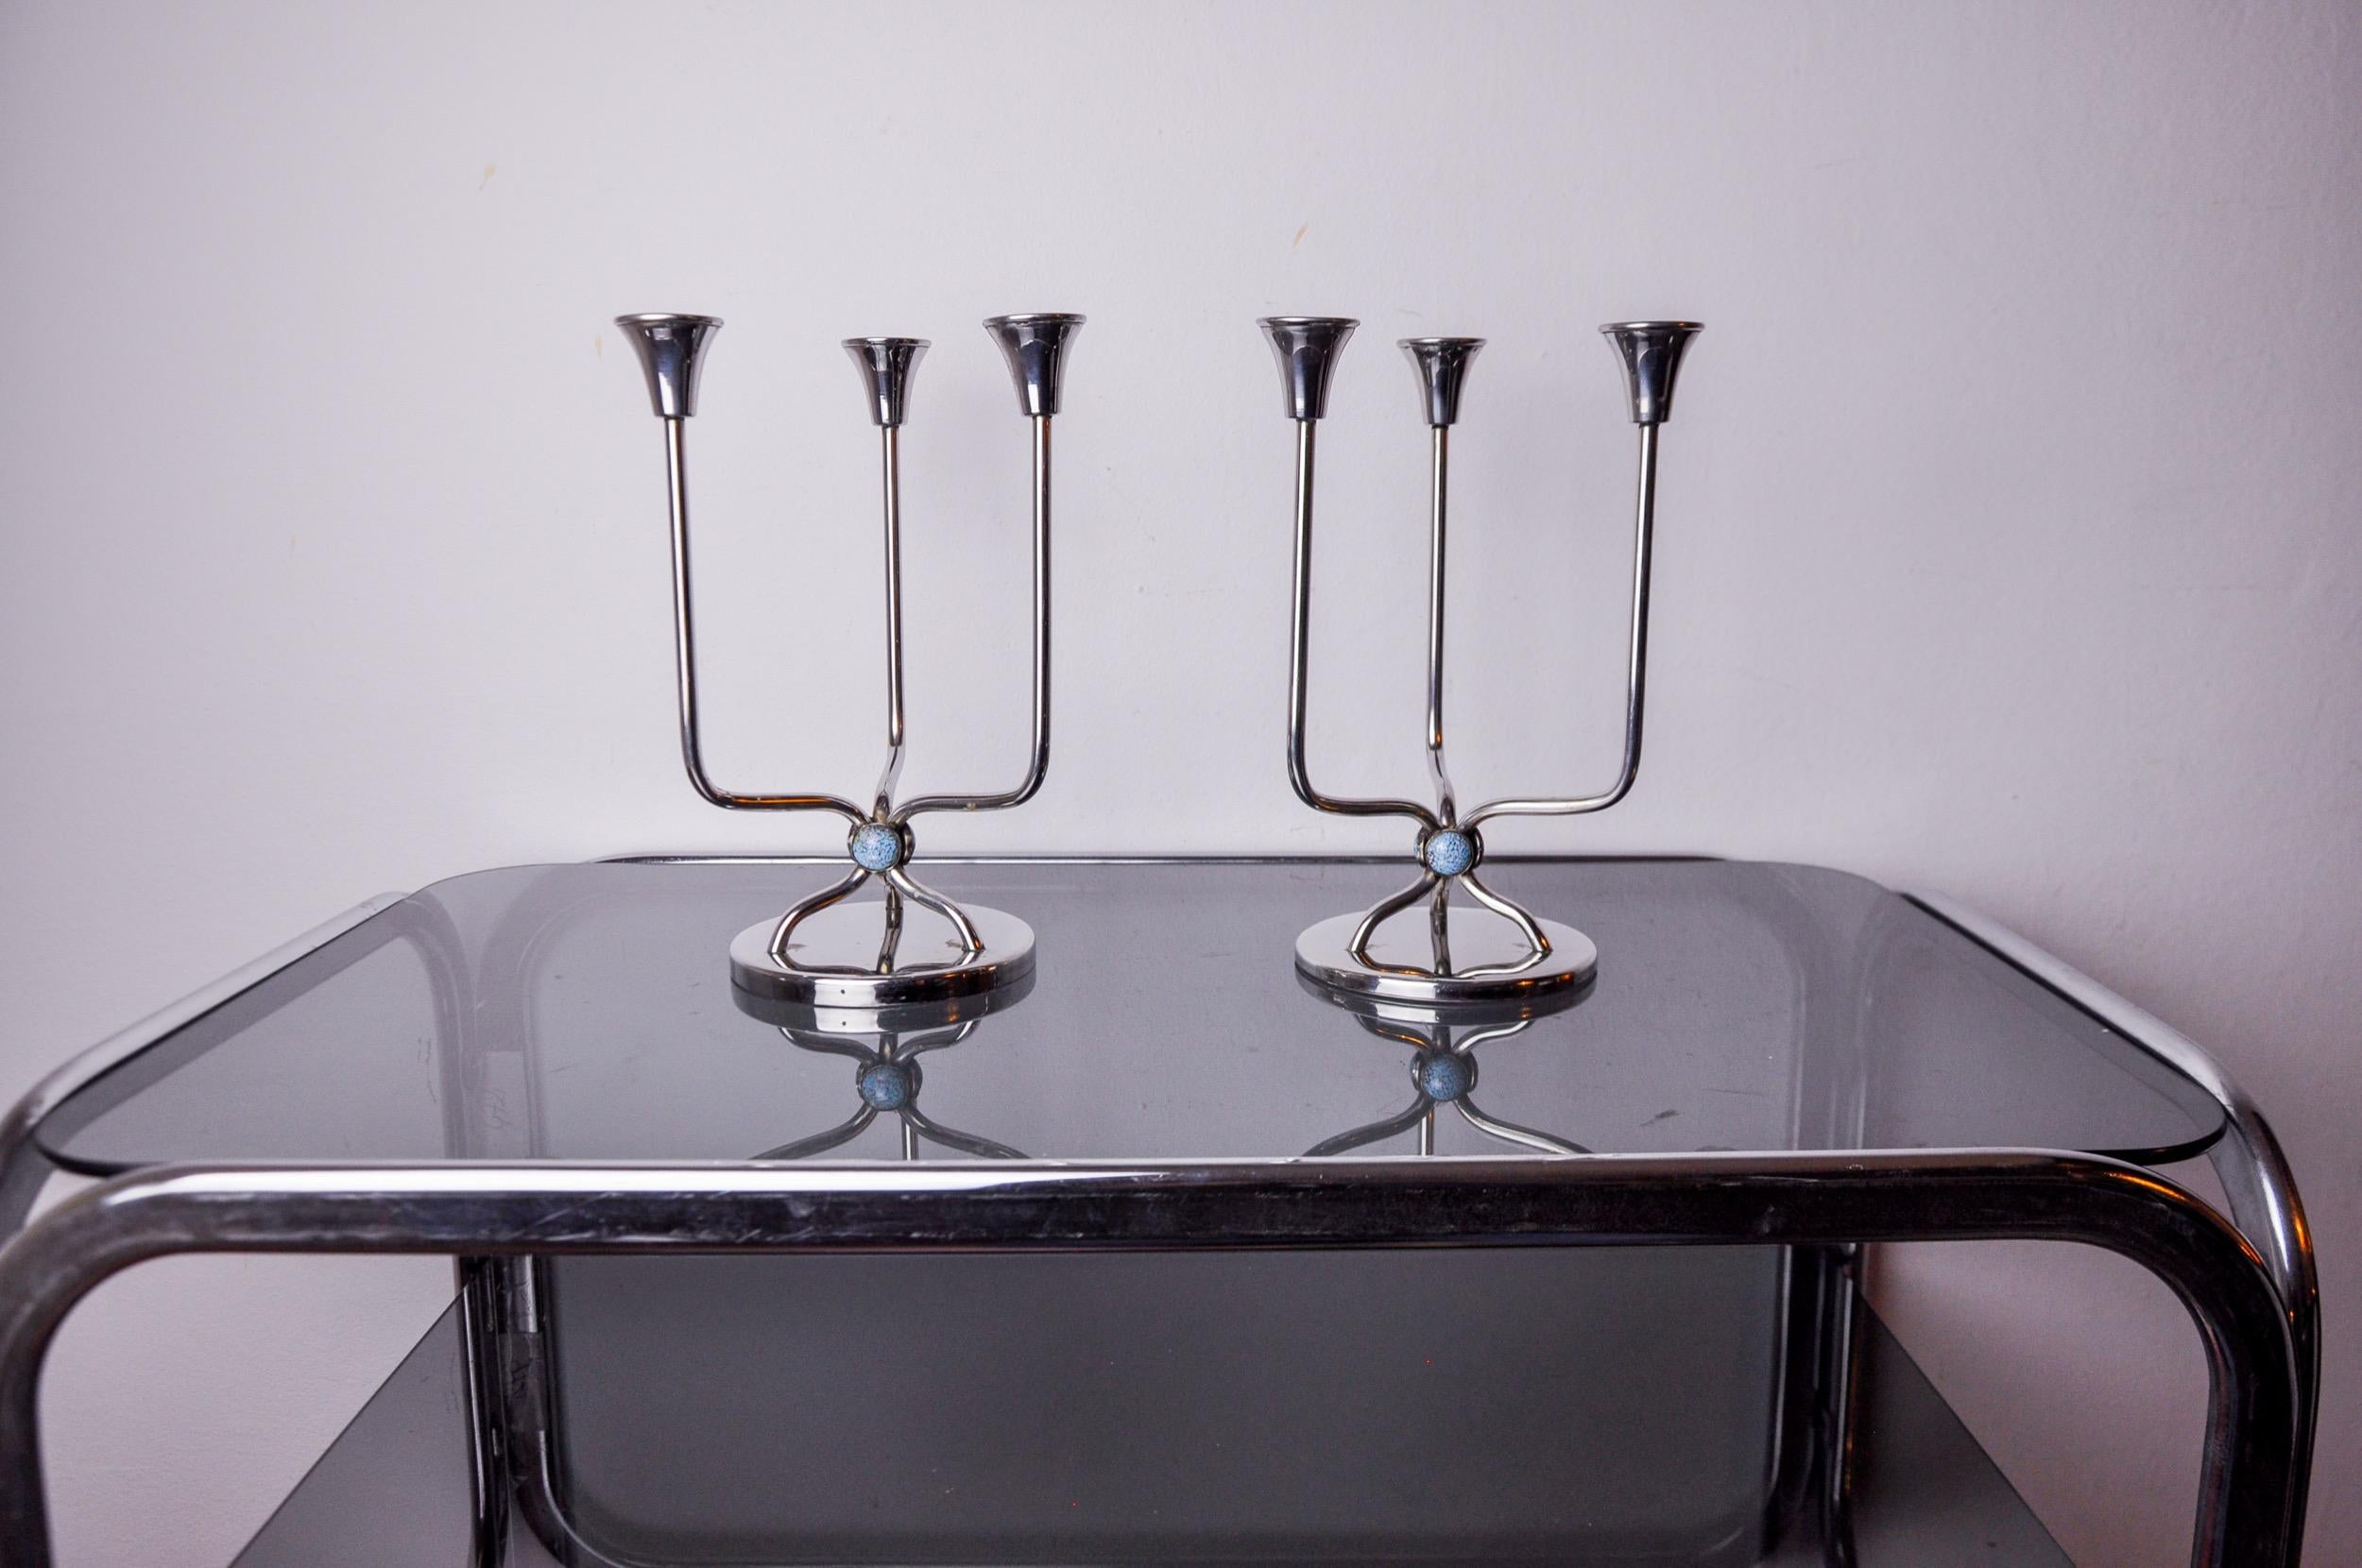 Superbe paire de chandeliers art déco en acier inoxydable conçus et produits en Espagne dans les années 1970. Structure en acier inoxydable 18/8 pouvant accueillir 3 bougies décorées de pierres bleues. Superbe objet design qui décorera parfaitement